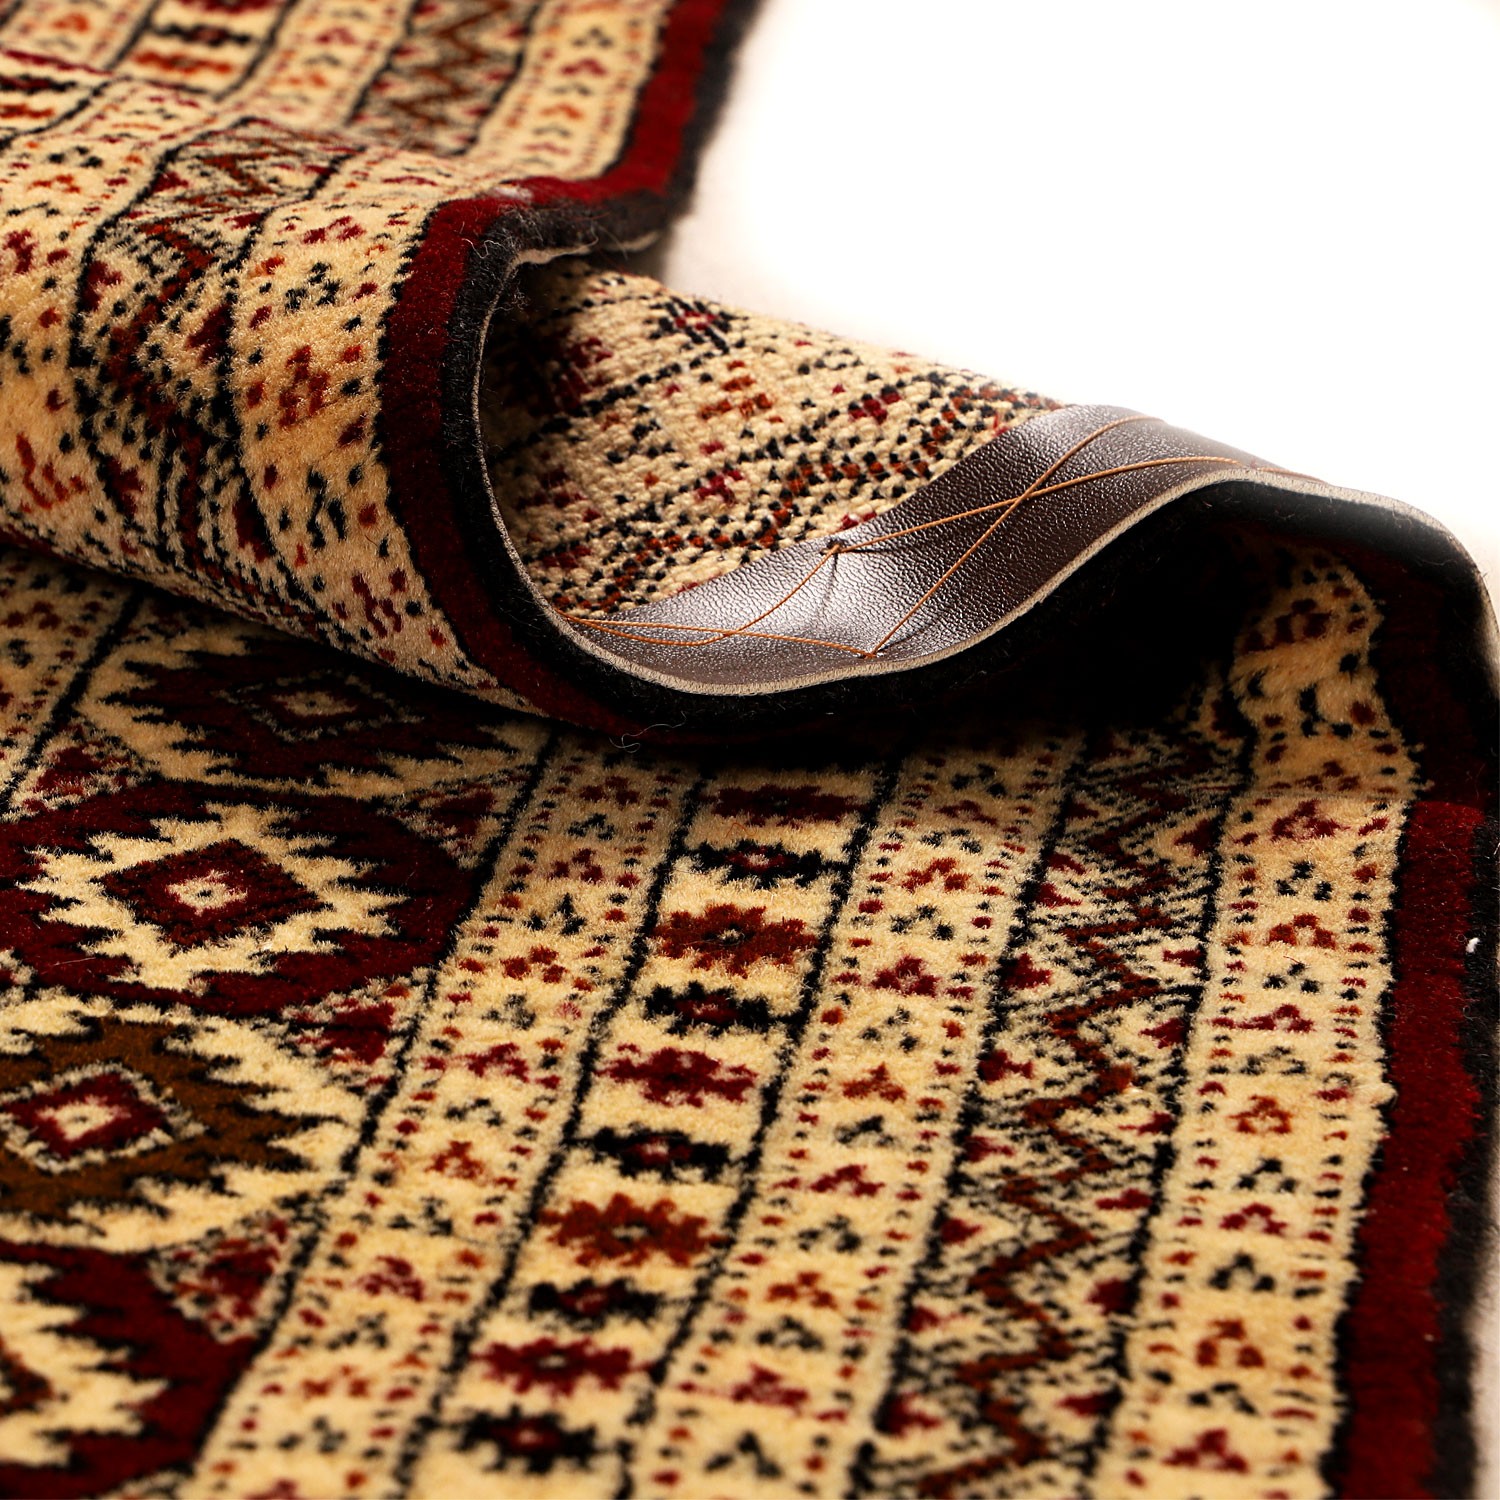 فرش ترکمن دستبافت دو و نیم متری کد 998884